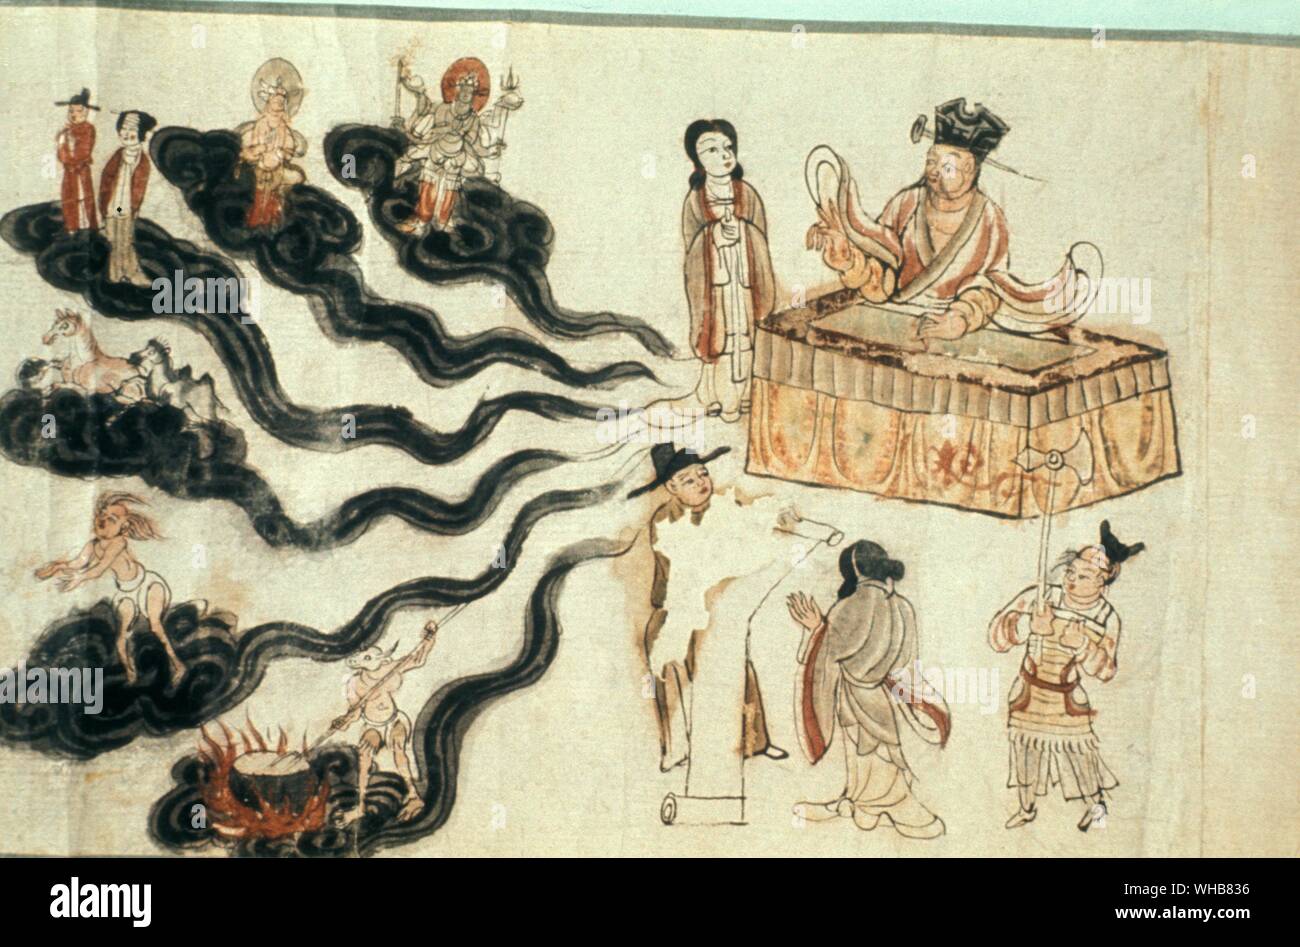 Cuevas de 1000 Buddahs , Tunhuang : Reyes de Stell presidiendo el Infierno - arte gráfico japonés Foto de stock